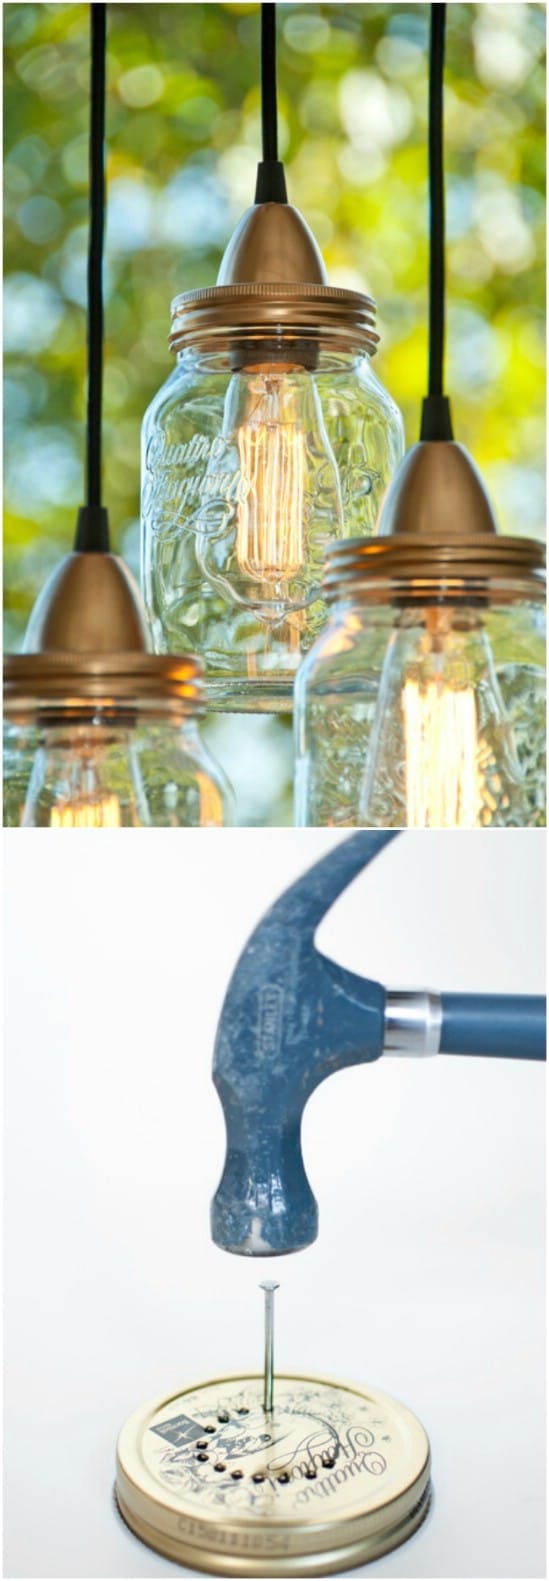 DIY Jar Lamps